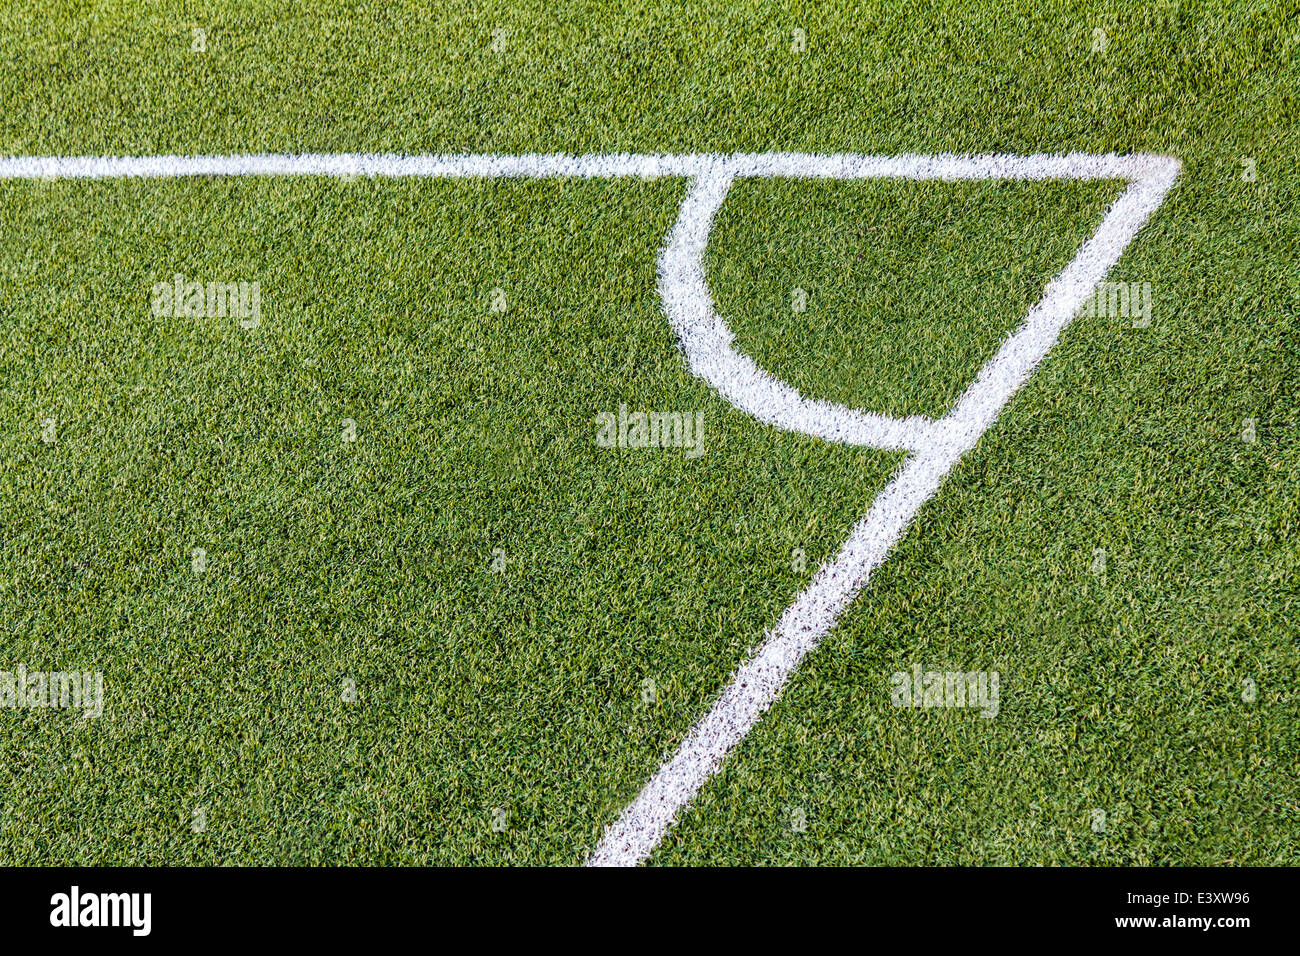 Gioco del calcio (calcio) tappeto erboso artificiale angolo del campo con i segni bianchi Foto Stock